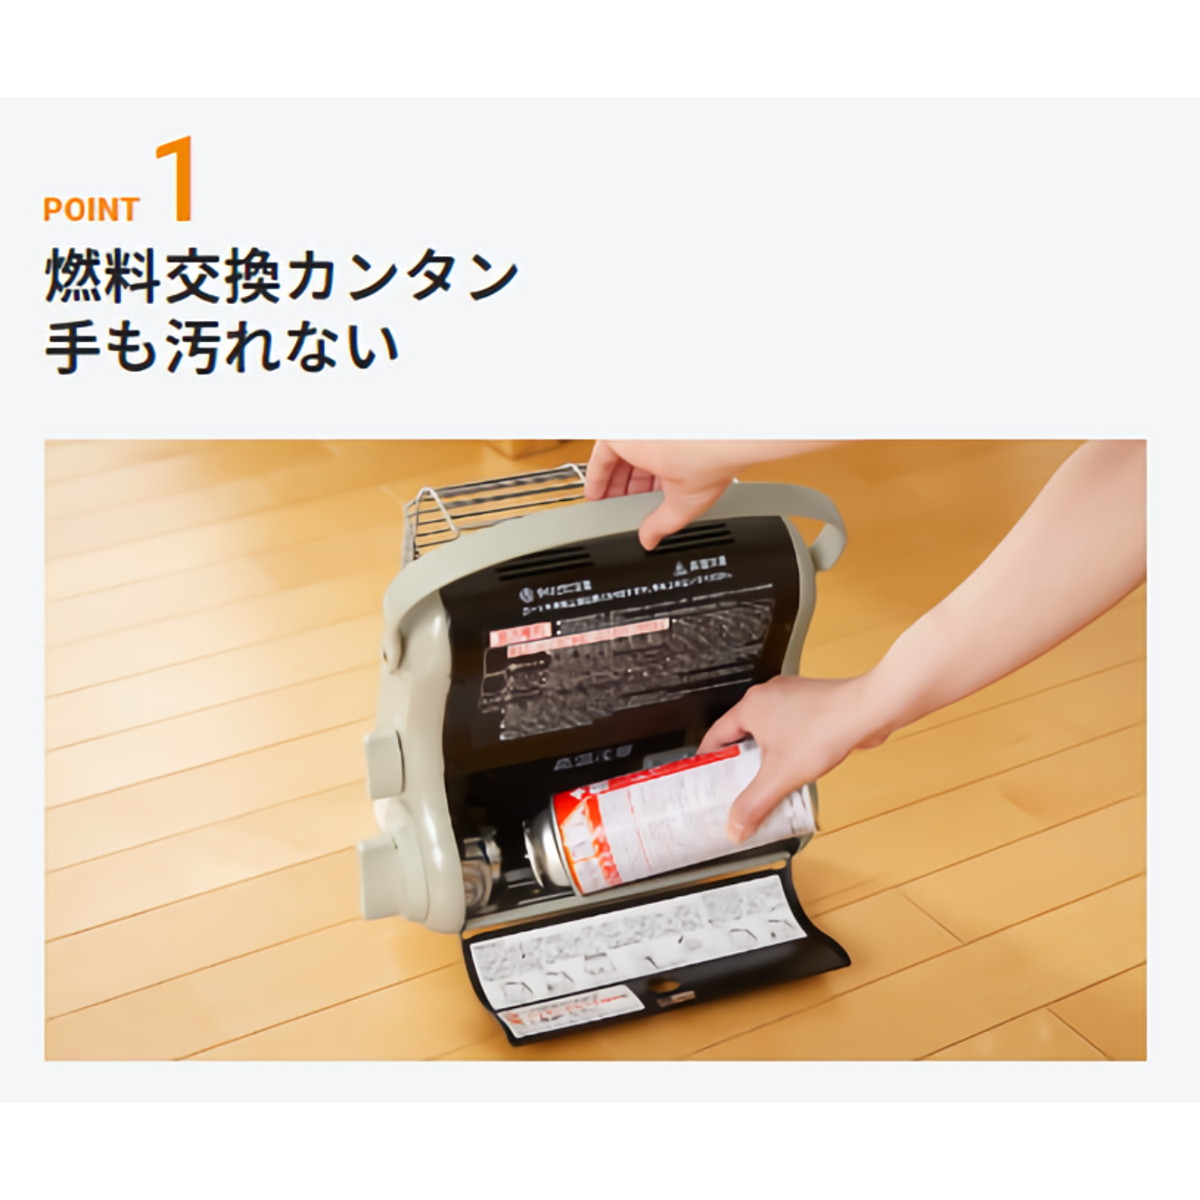 イワタニ iwatani カセットガス ストーブ ポータブル マイ暖 保証書付き コードレス 電源不要 防災対策